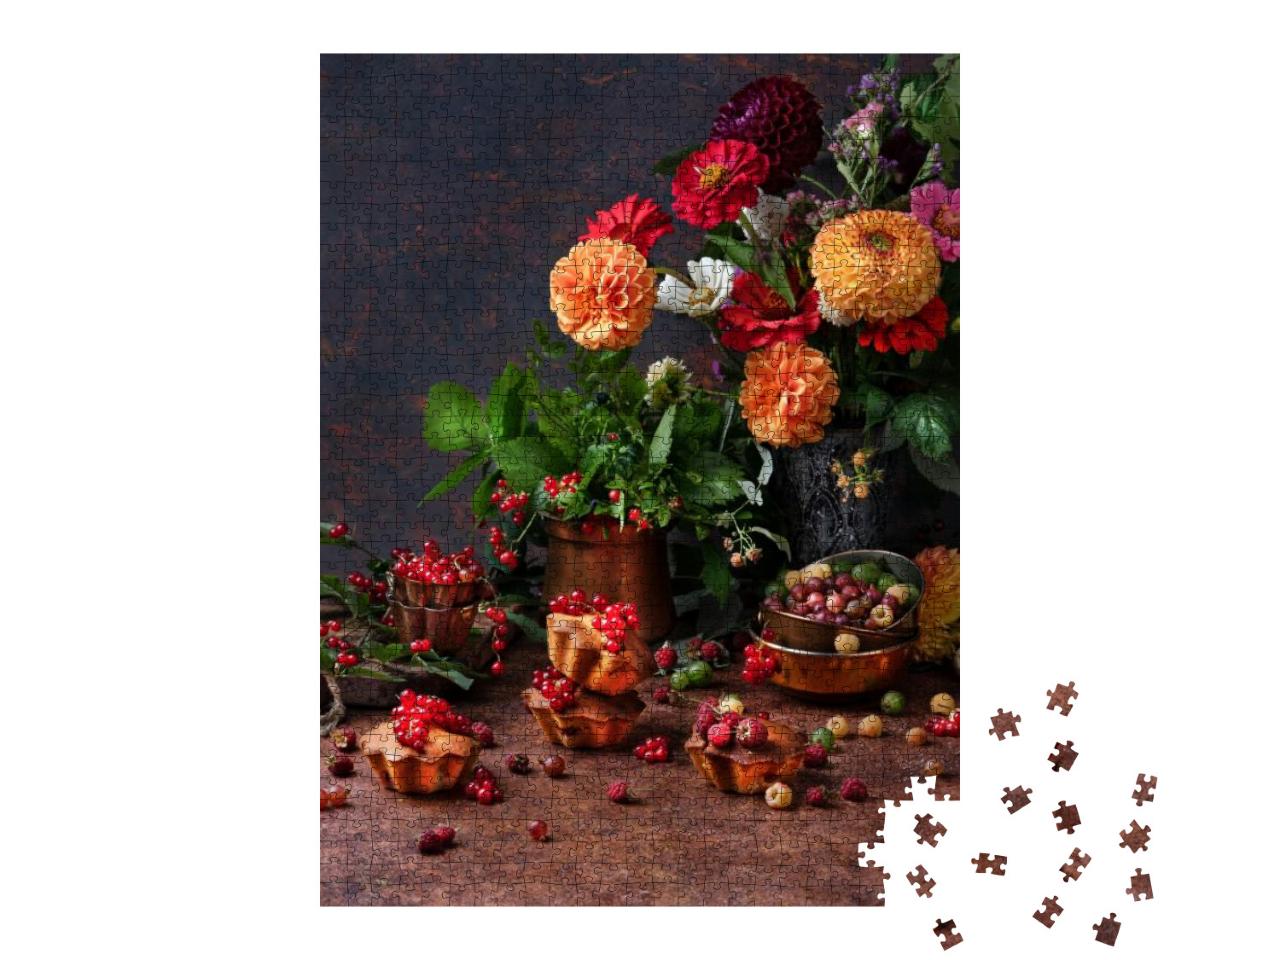 Puzzle 1000 Teile „Herbst: Blumen und Gebäck der Saison“